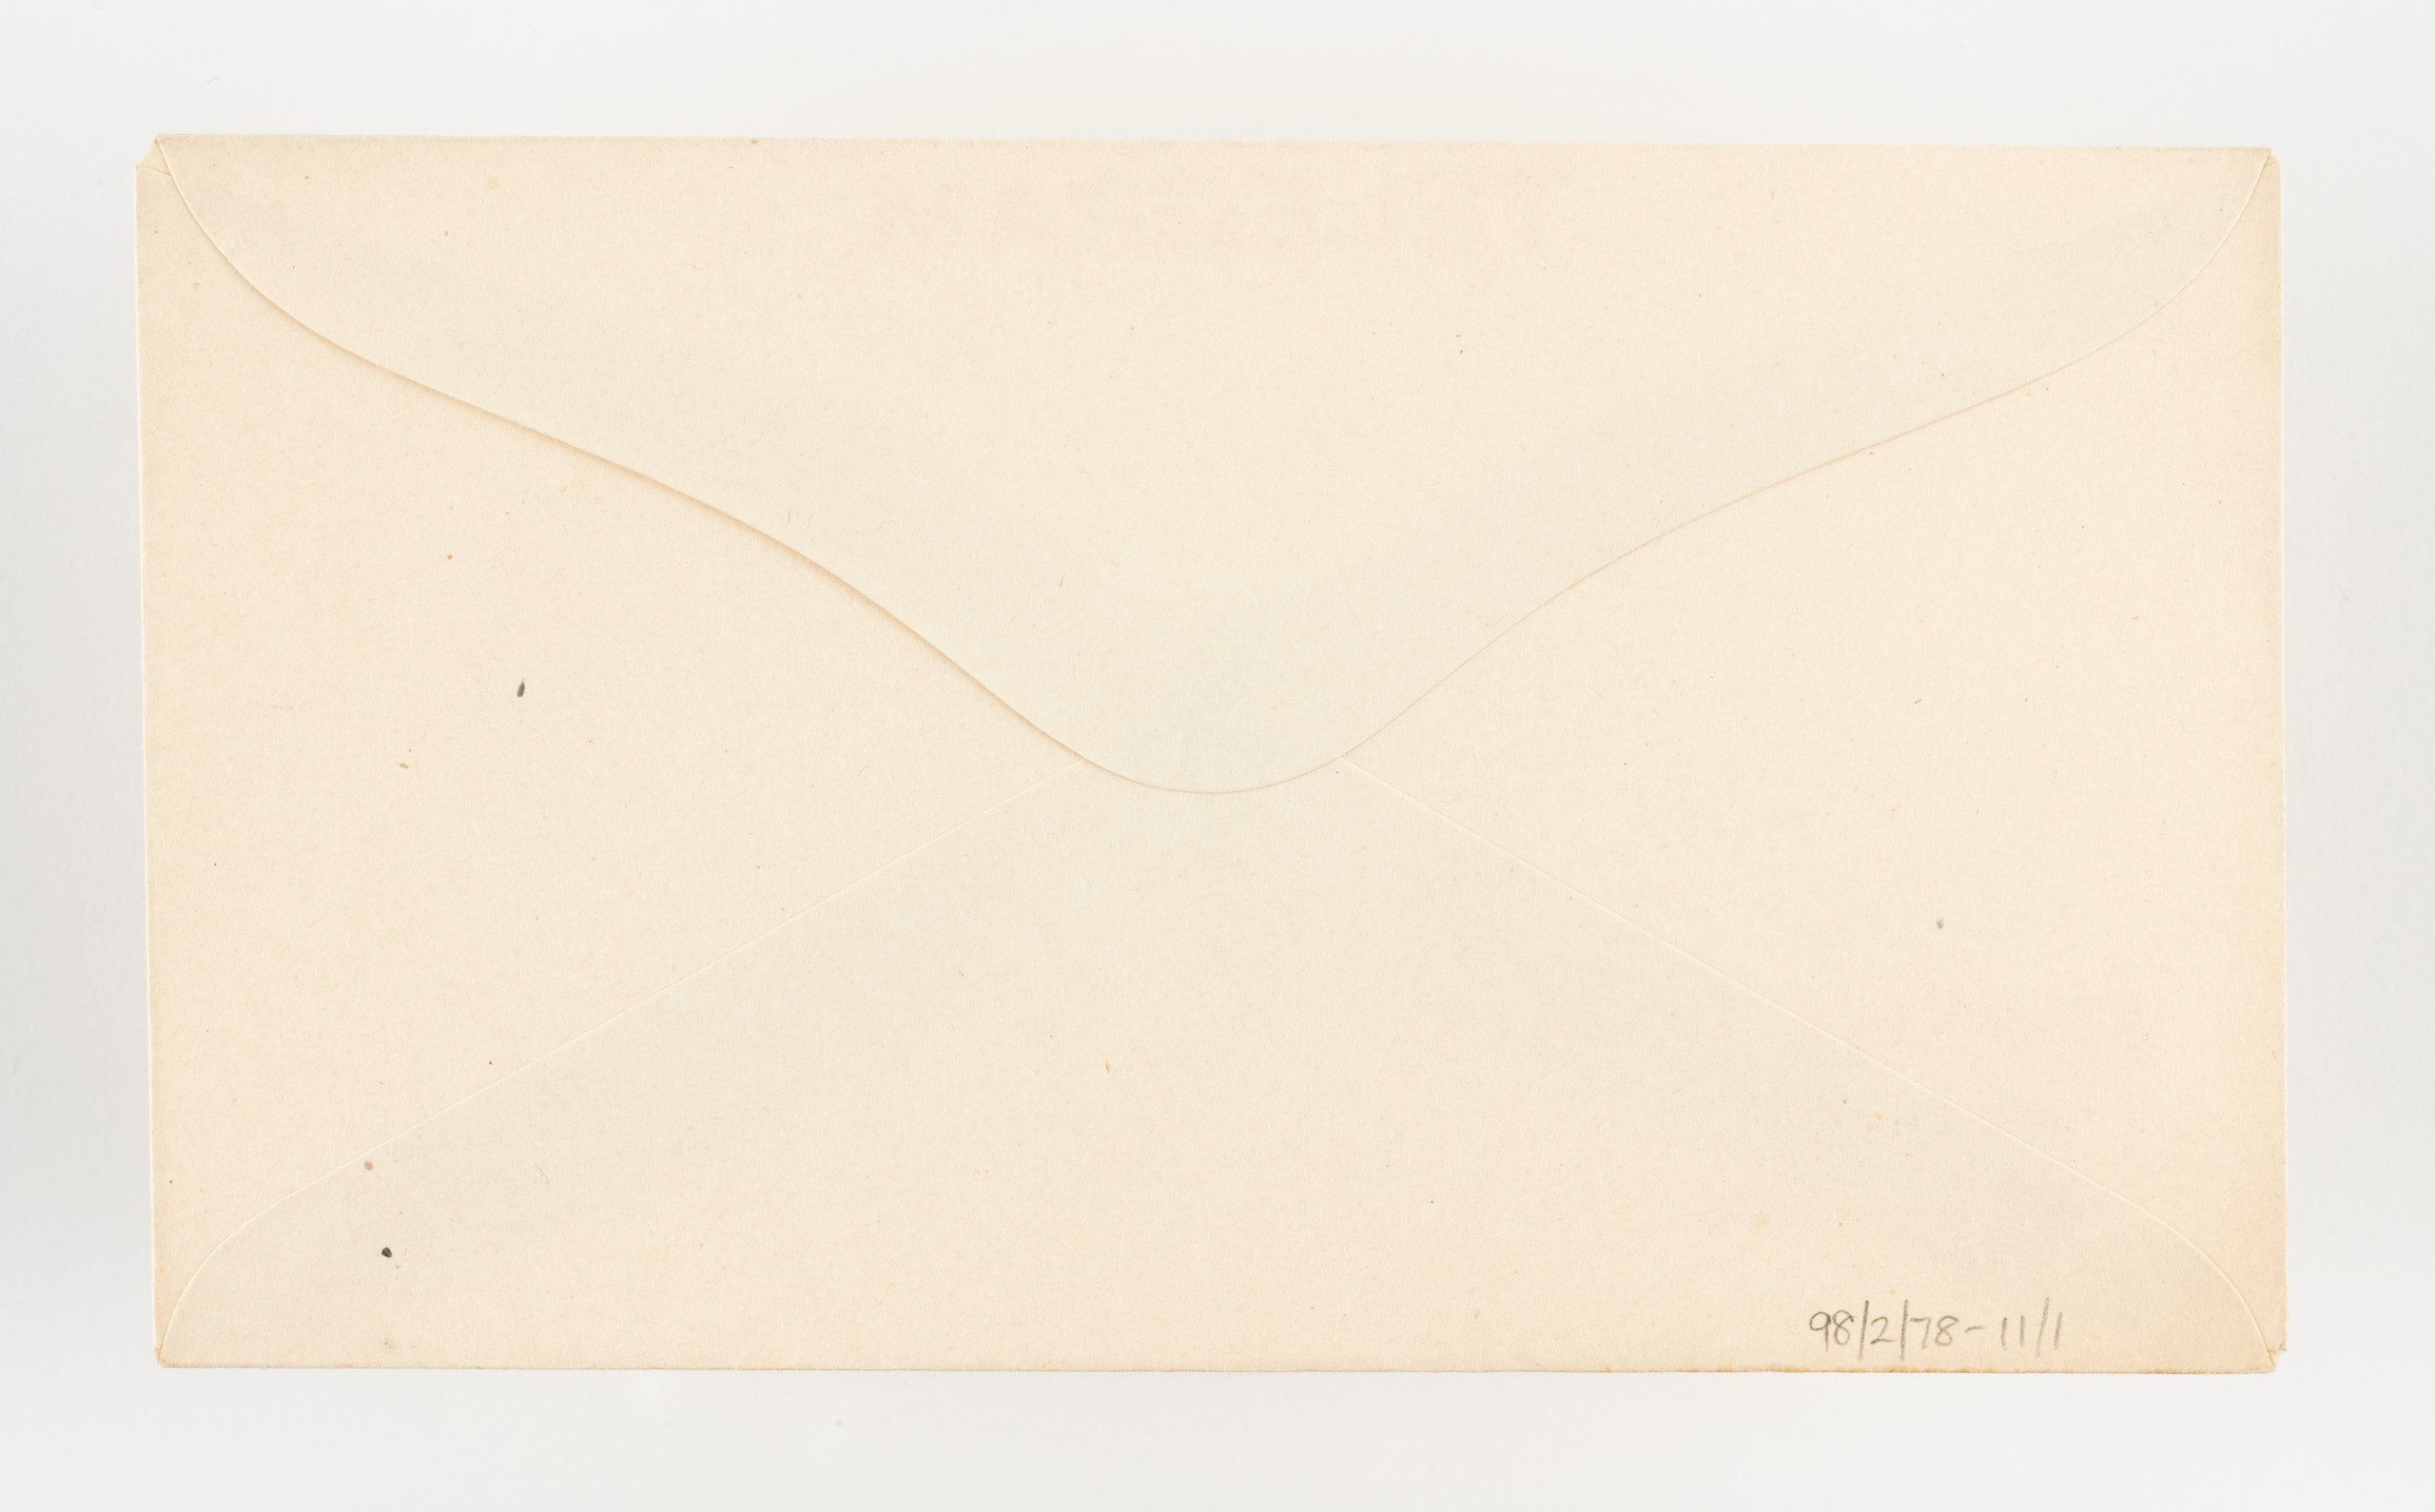 Telegram envelope by Australian Post Office